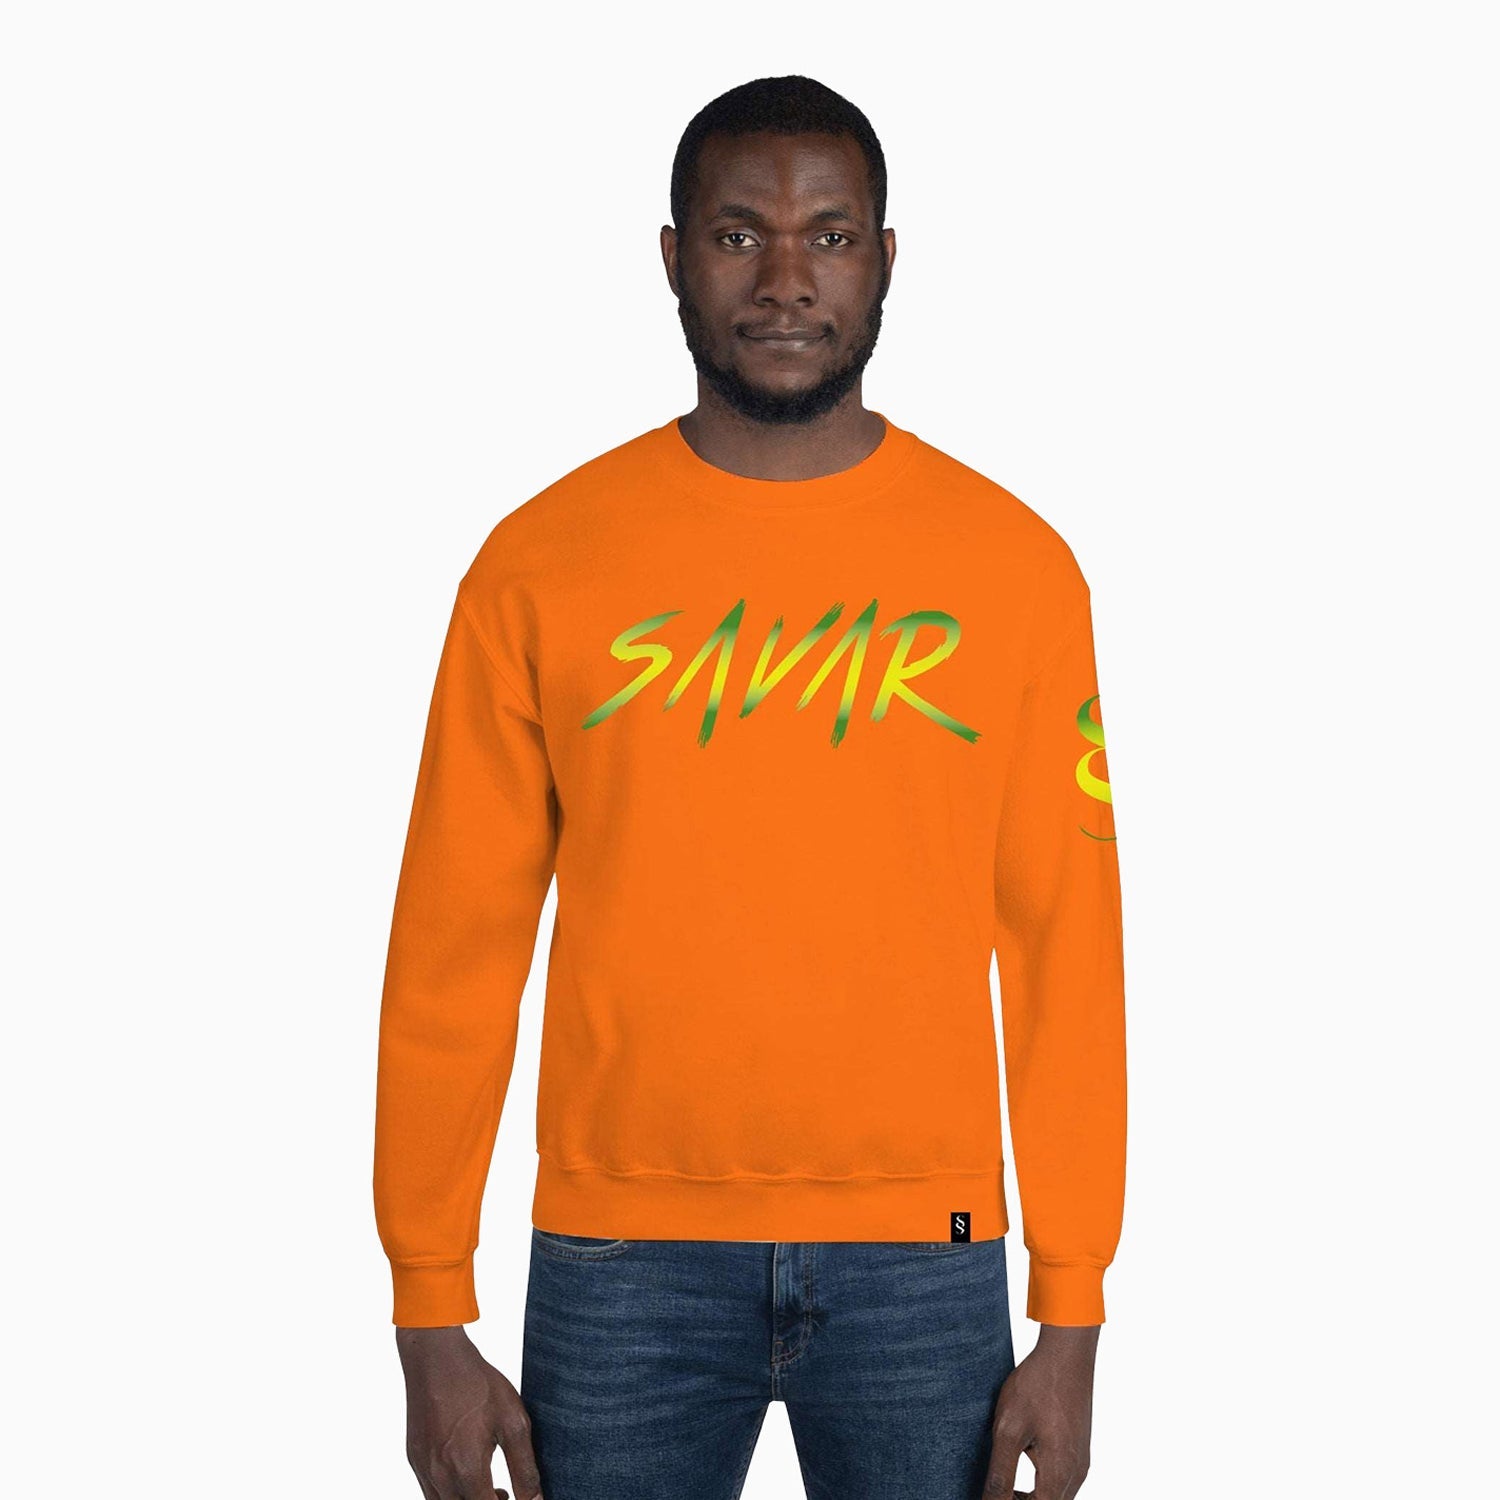 signature-design-printed-crew-neck-orange-sweatshirt-for-men-sc111-852